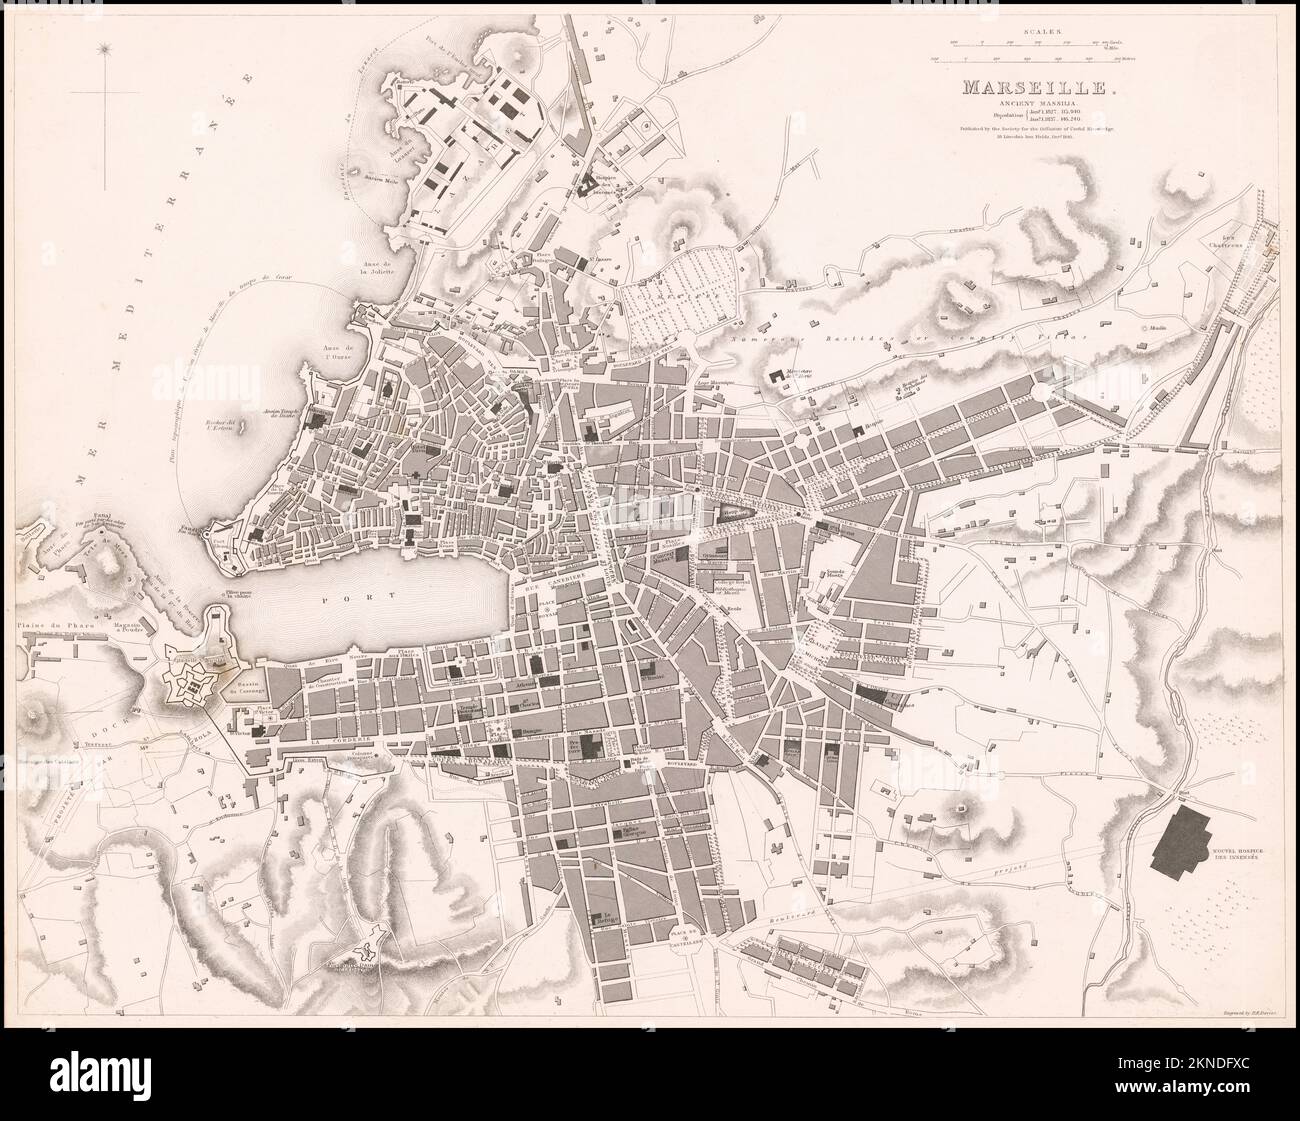 Plano de la ciudad vintage de Marsella y el área alrededor de él siglo from19th. Los mapas están bellamente ilustrados a mano y grabados que muestran la ciudad en el momento. Foto de stock